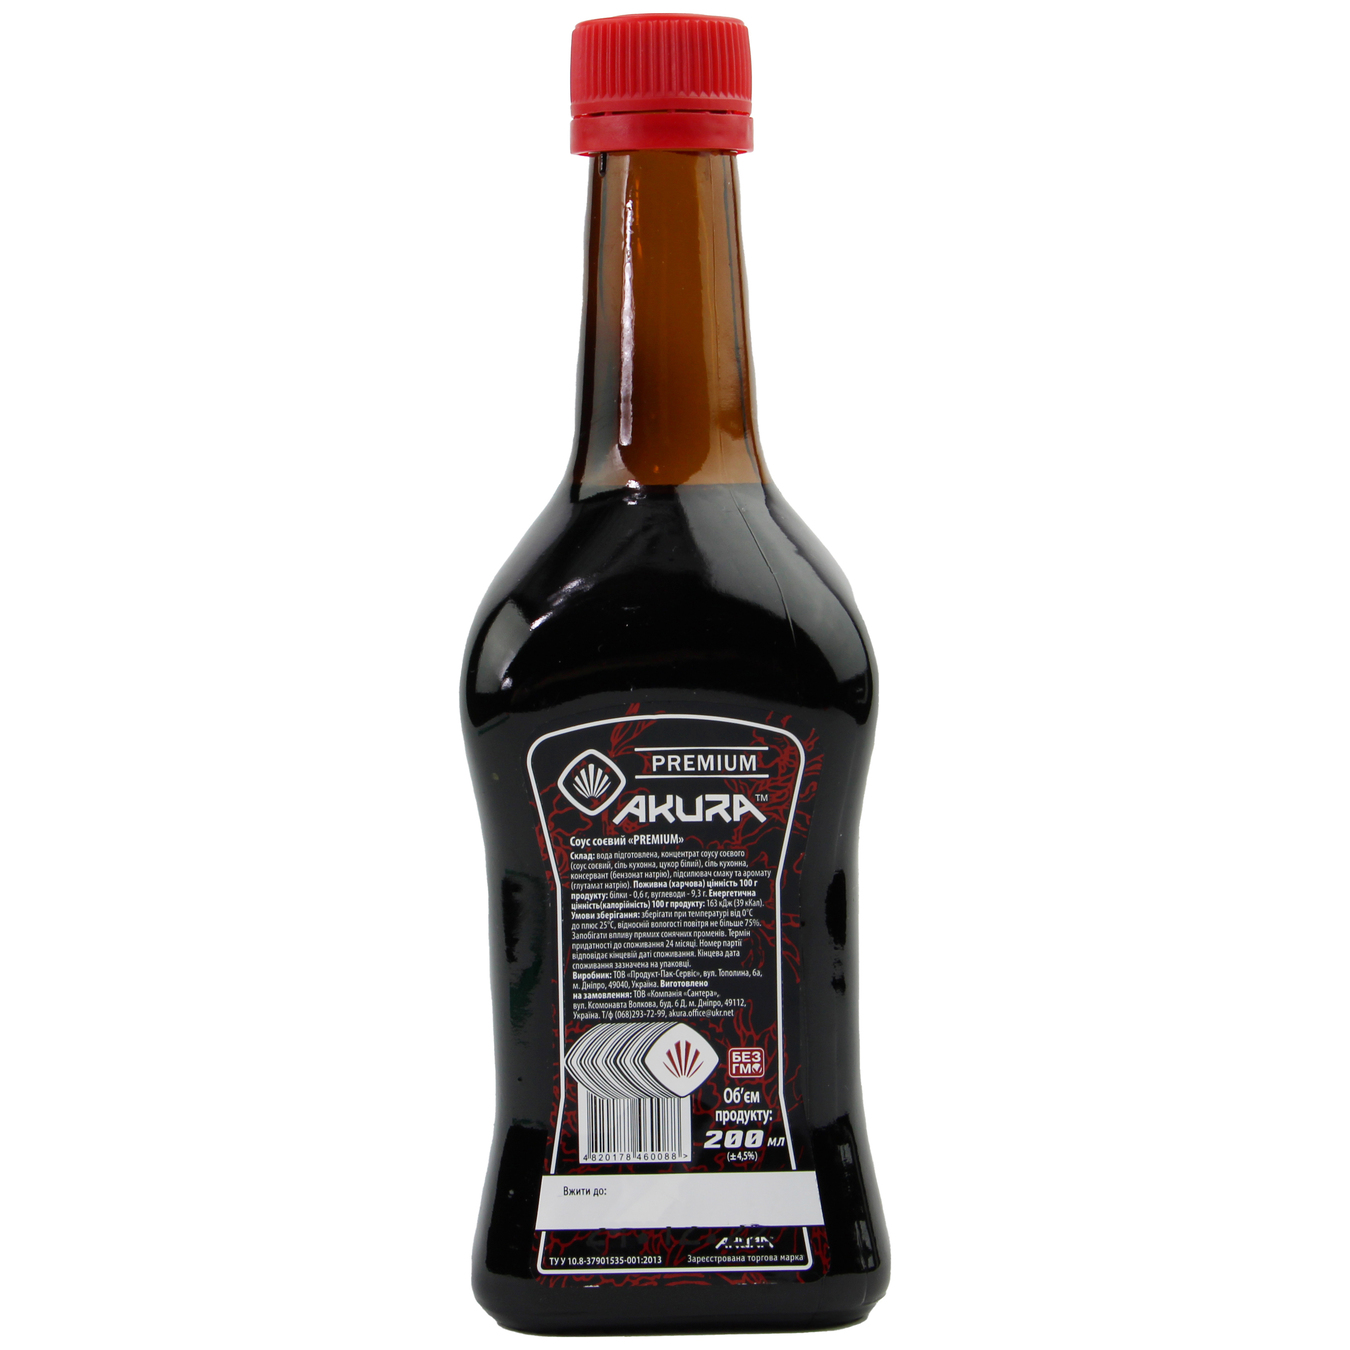 Akura Premium Soy Sauce 200ml 2